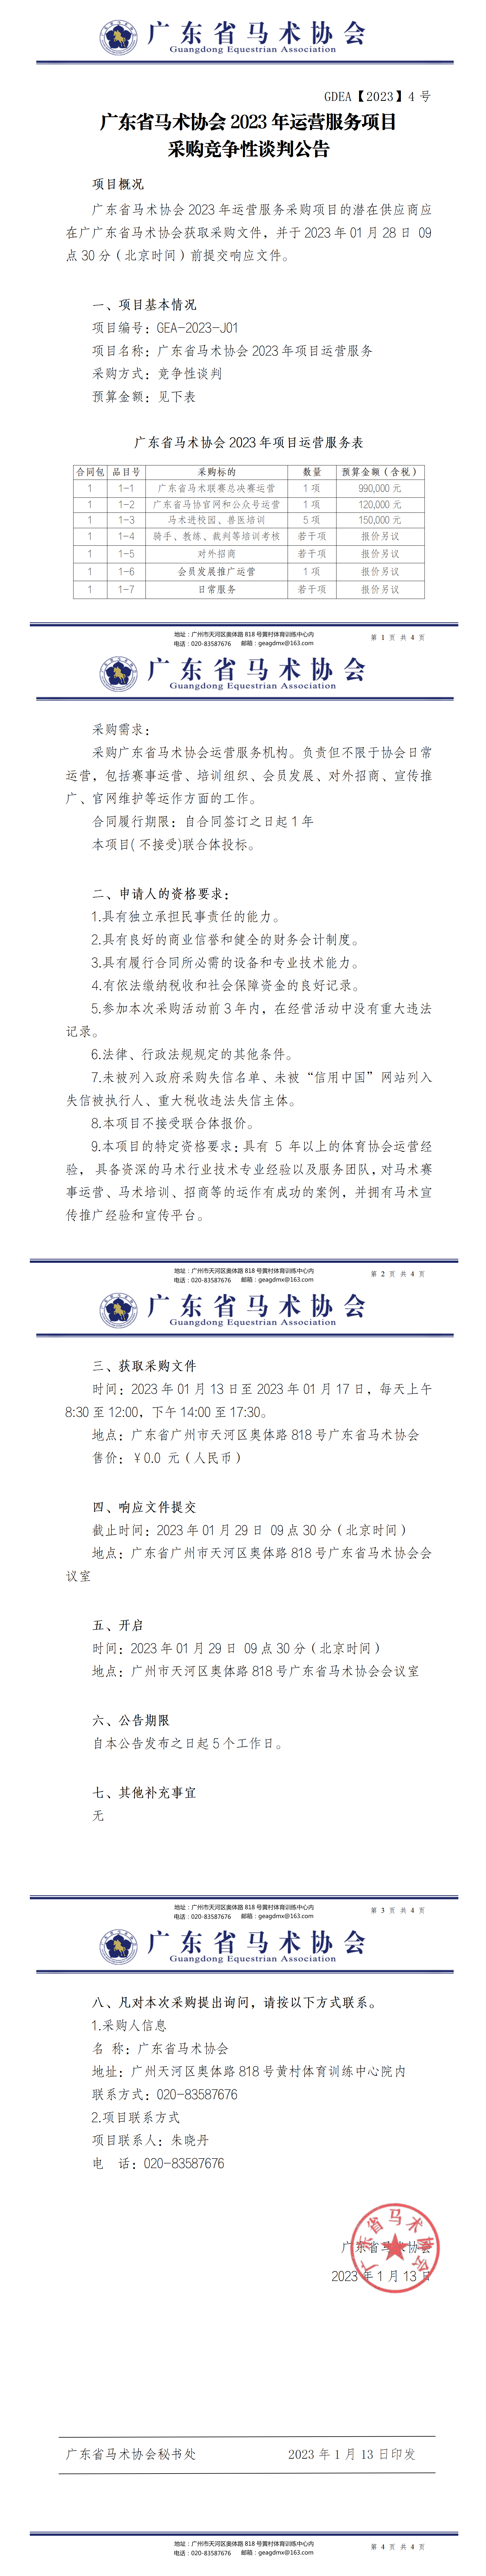 广东省马术协会2023年运营服务采购竞争性谈判公告(2)(1)(1)_01.png